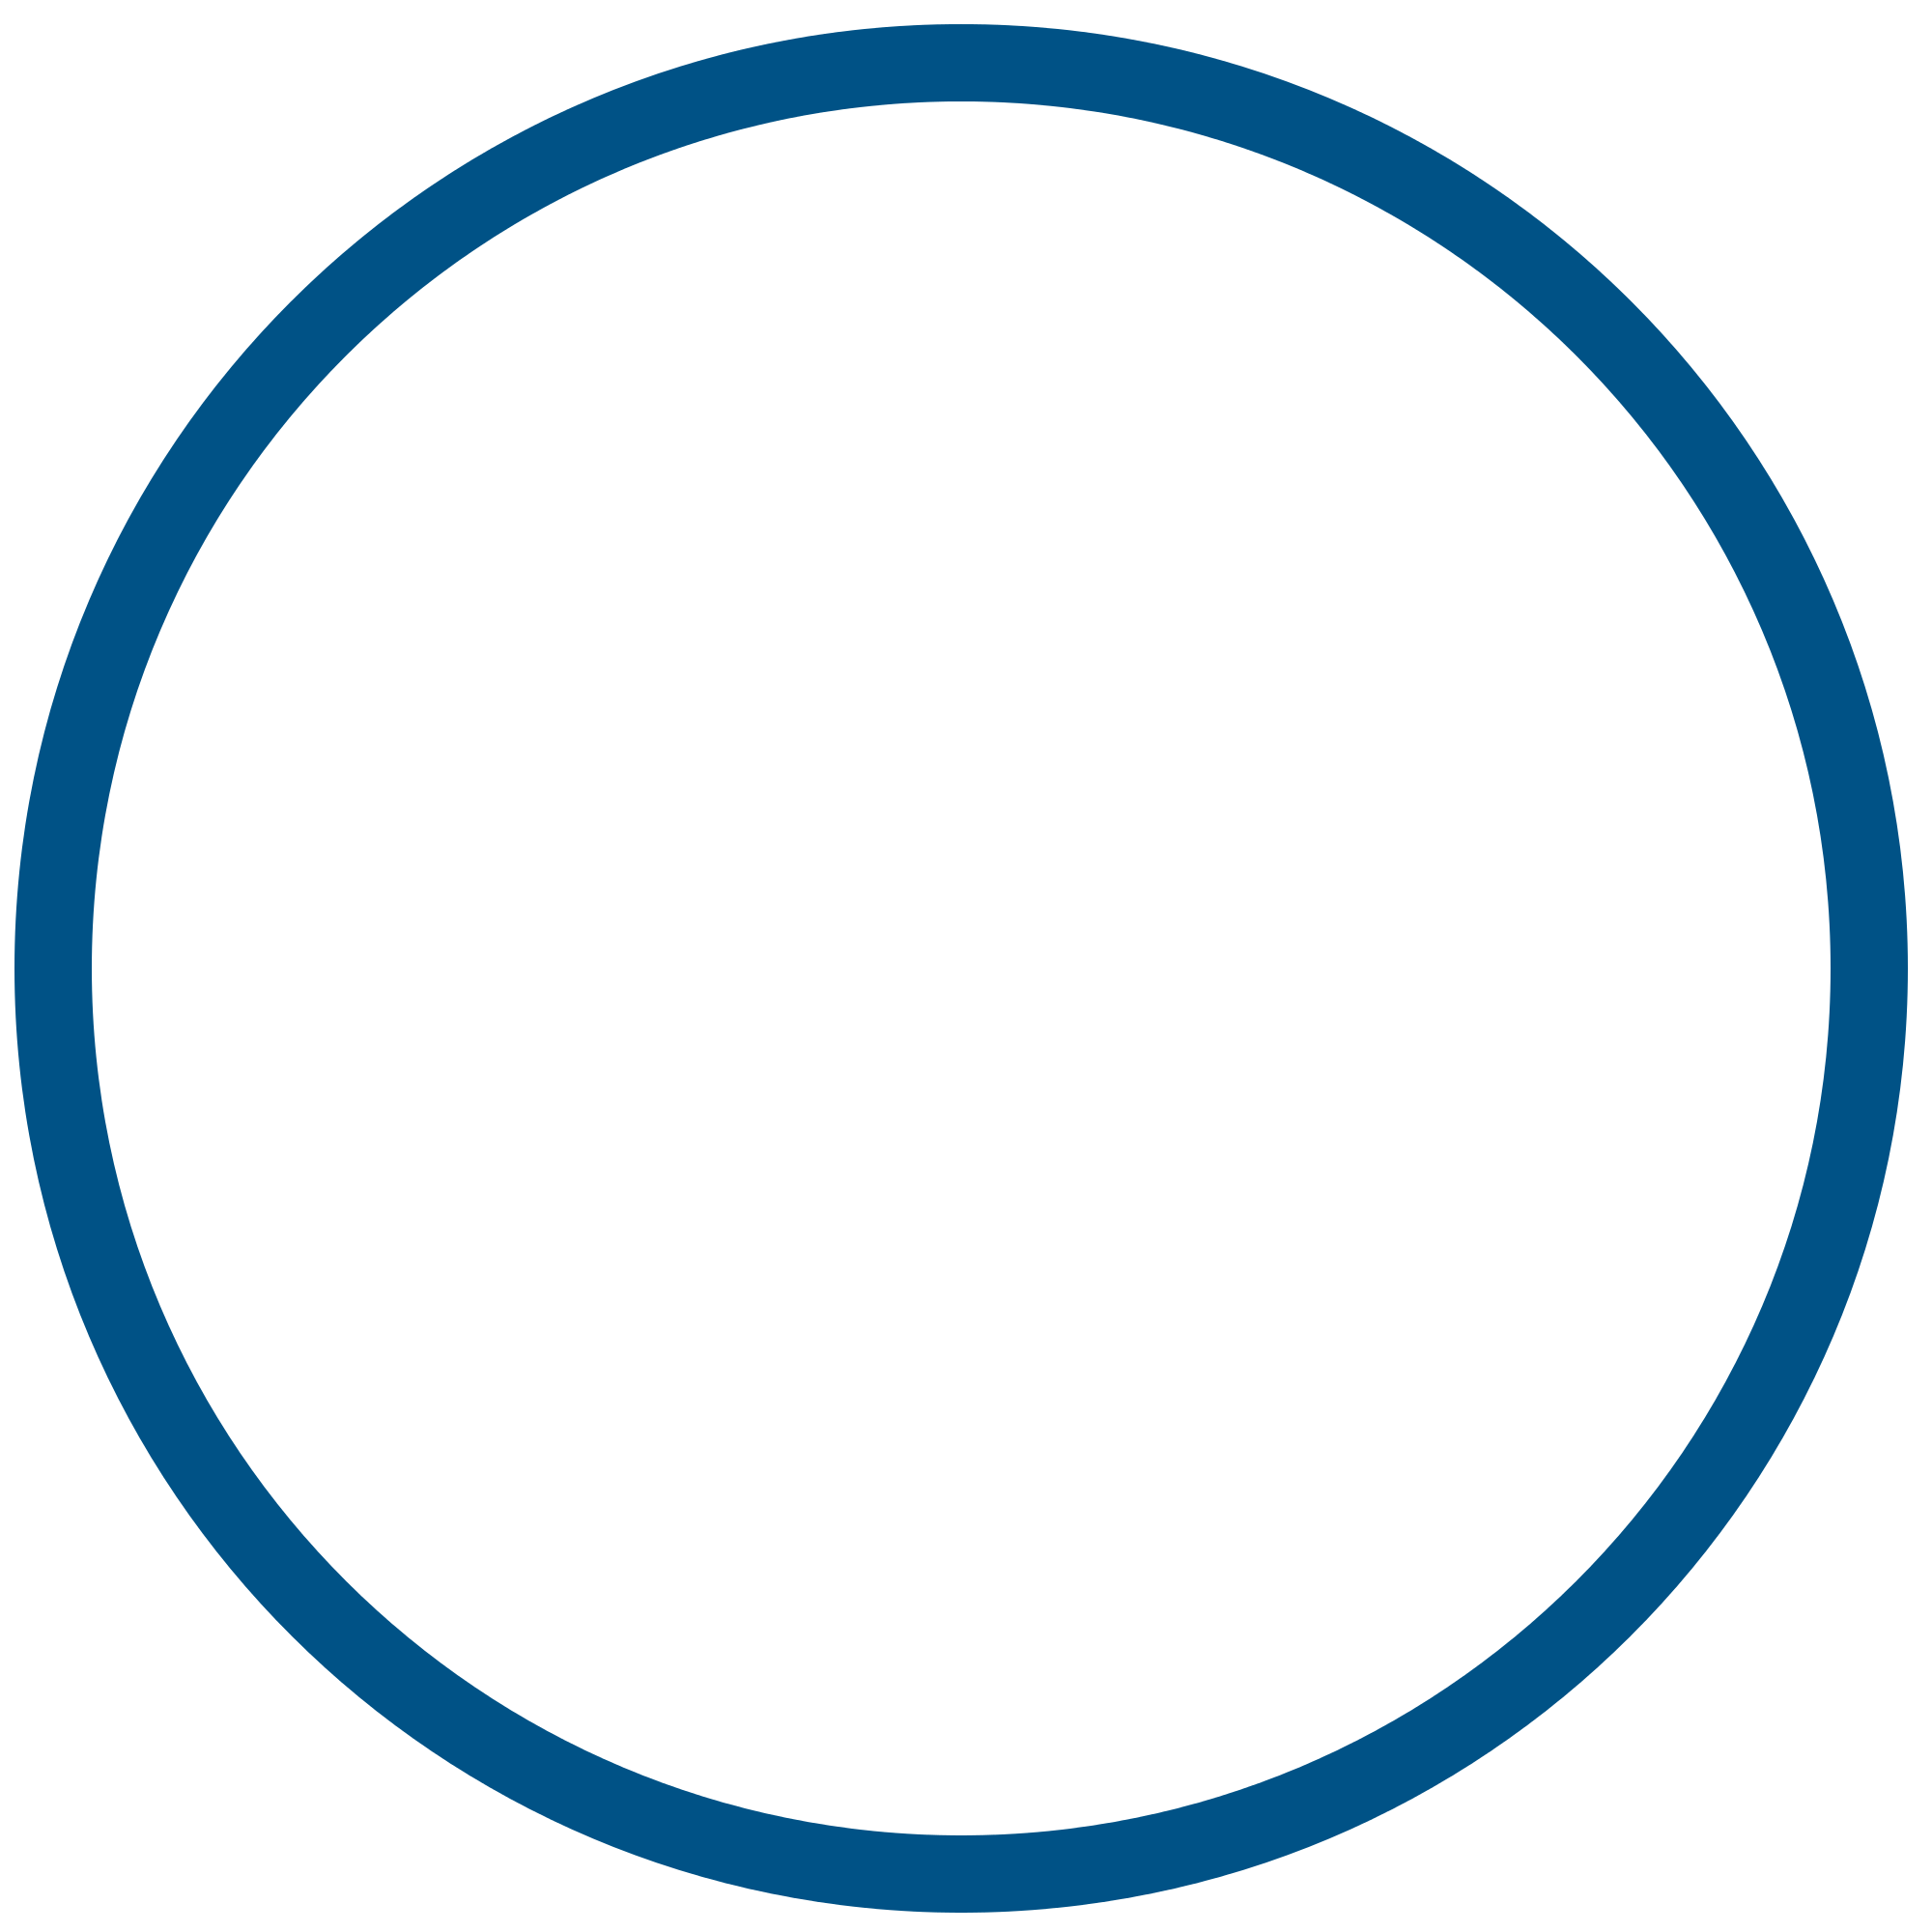 Half Blue Circle Logo - Half Blue Circle Logo Png Image